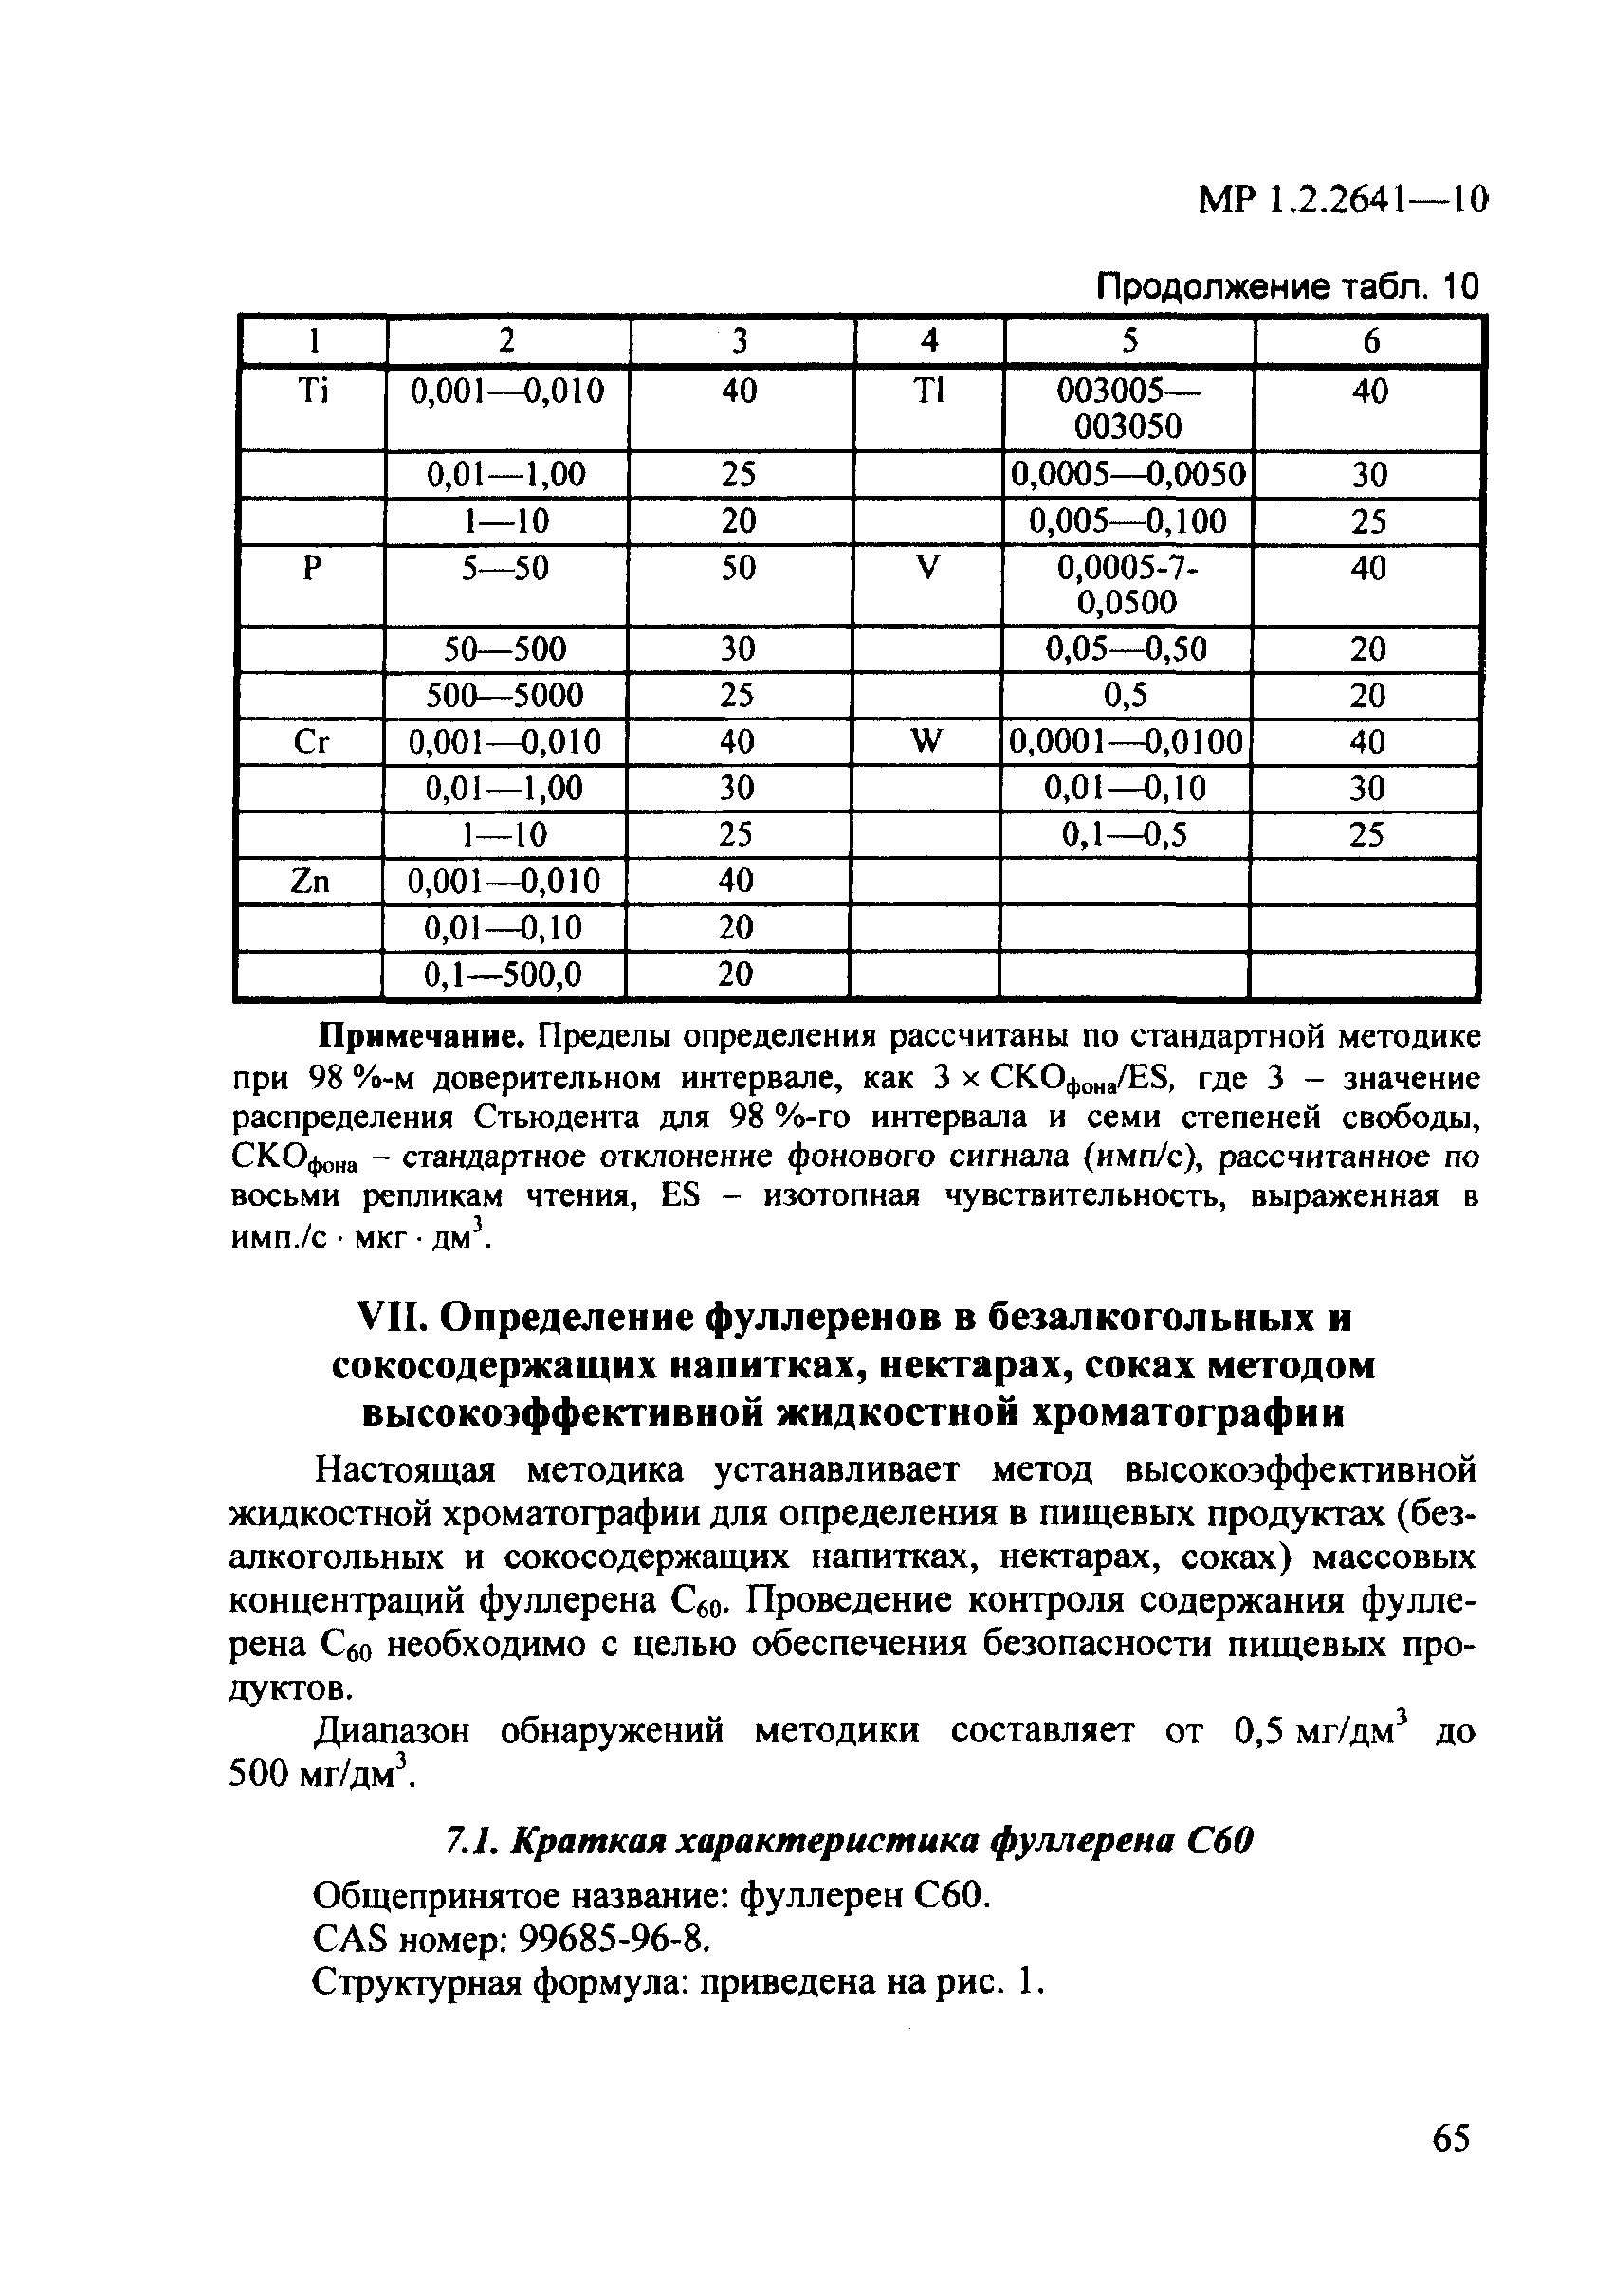 МР 1.2.2641-10